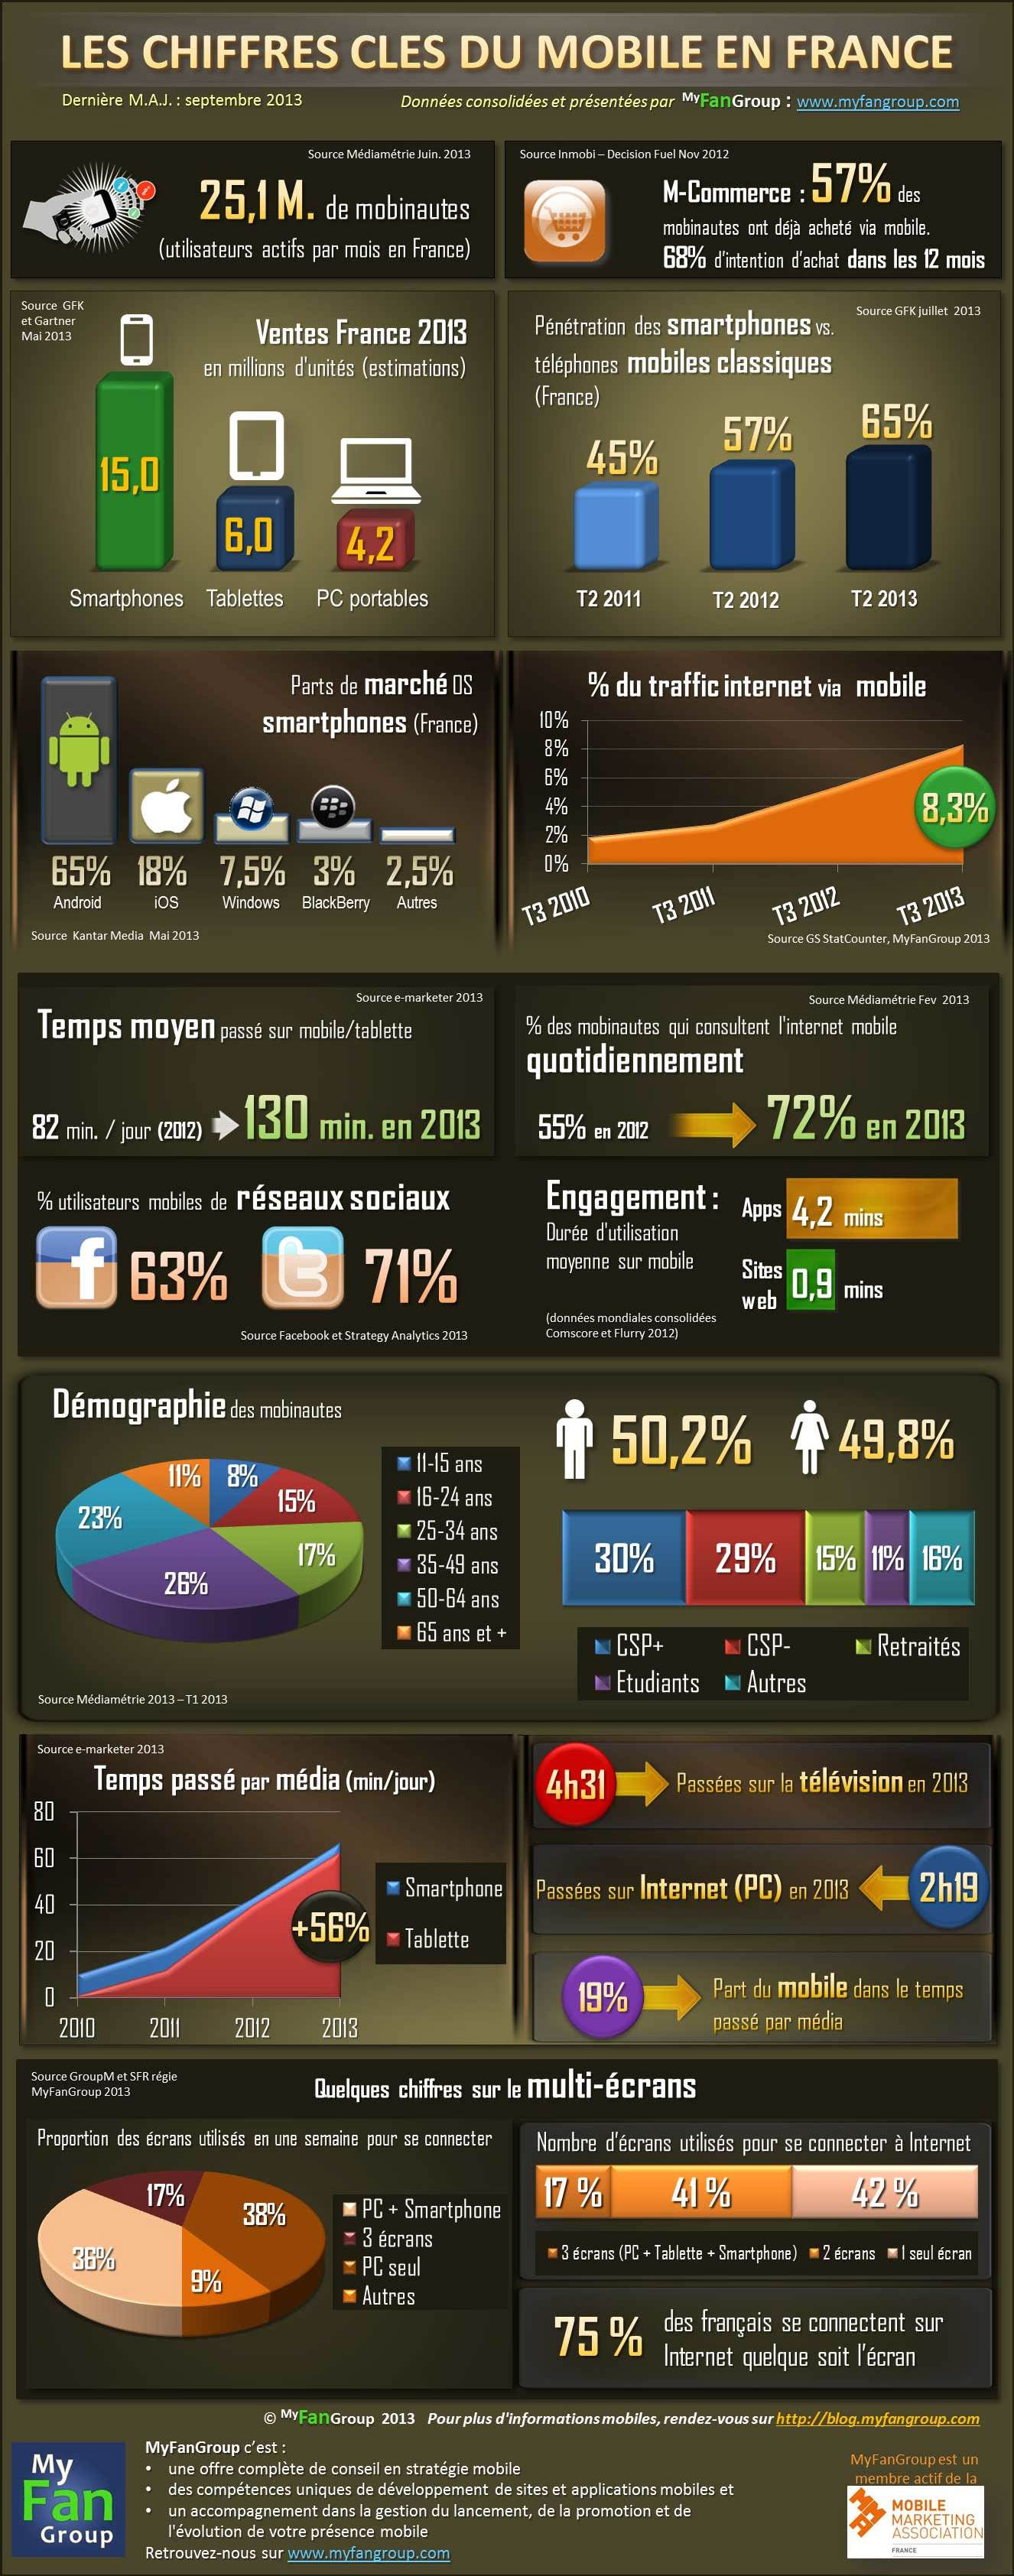 Infographie-Myfangroup-les-chiffres-clés-du-mobile-en-France